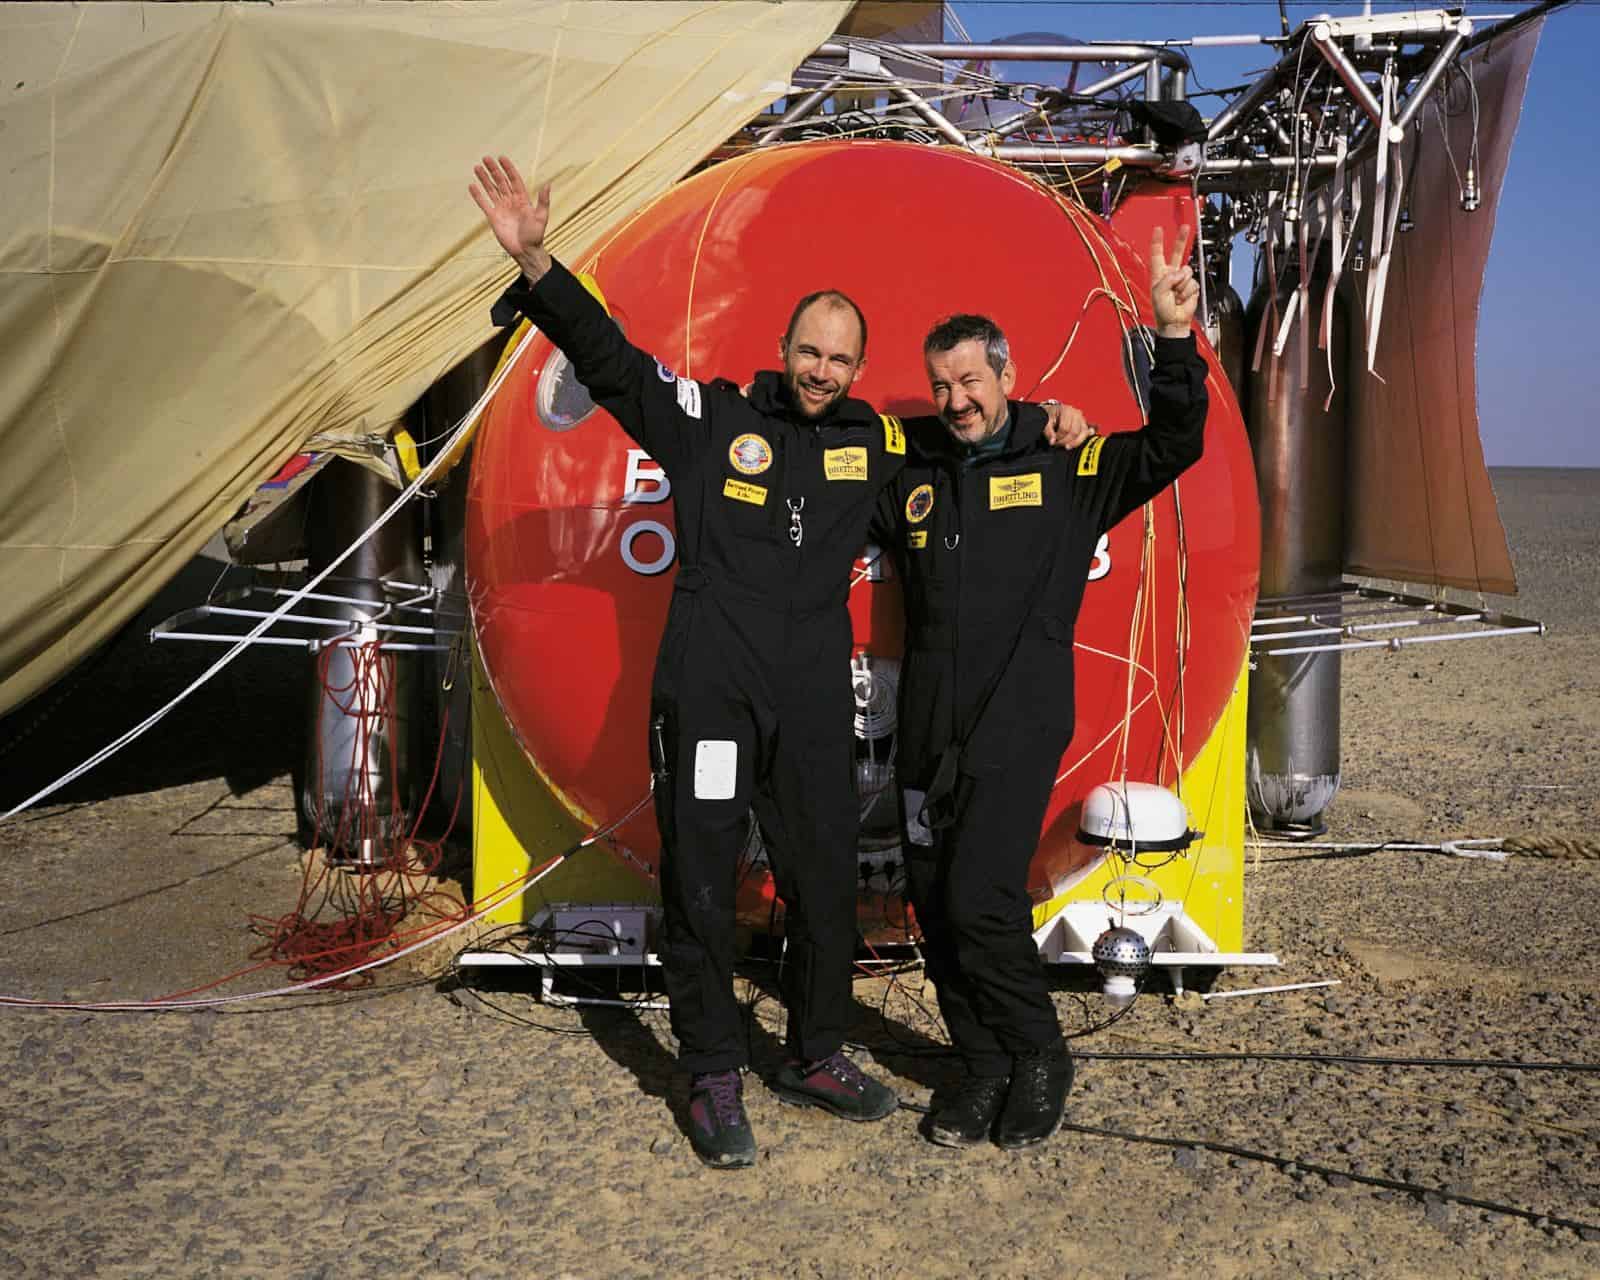 Bertrand Piccard und Brian Jones mit ihrem Orbiter 2 Ballon nach der Landung